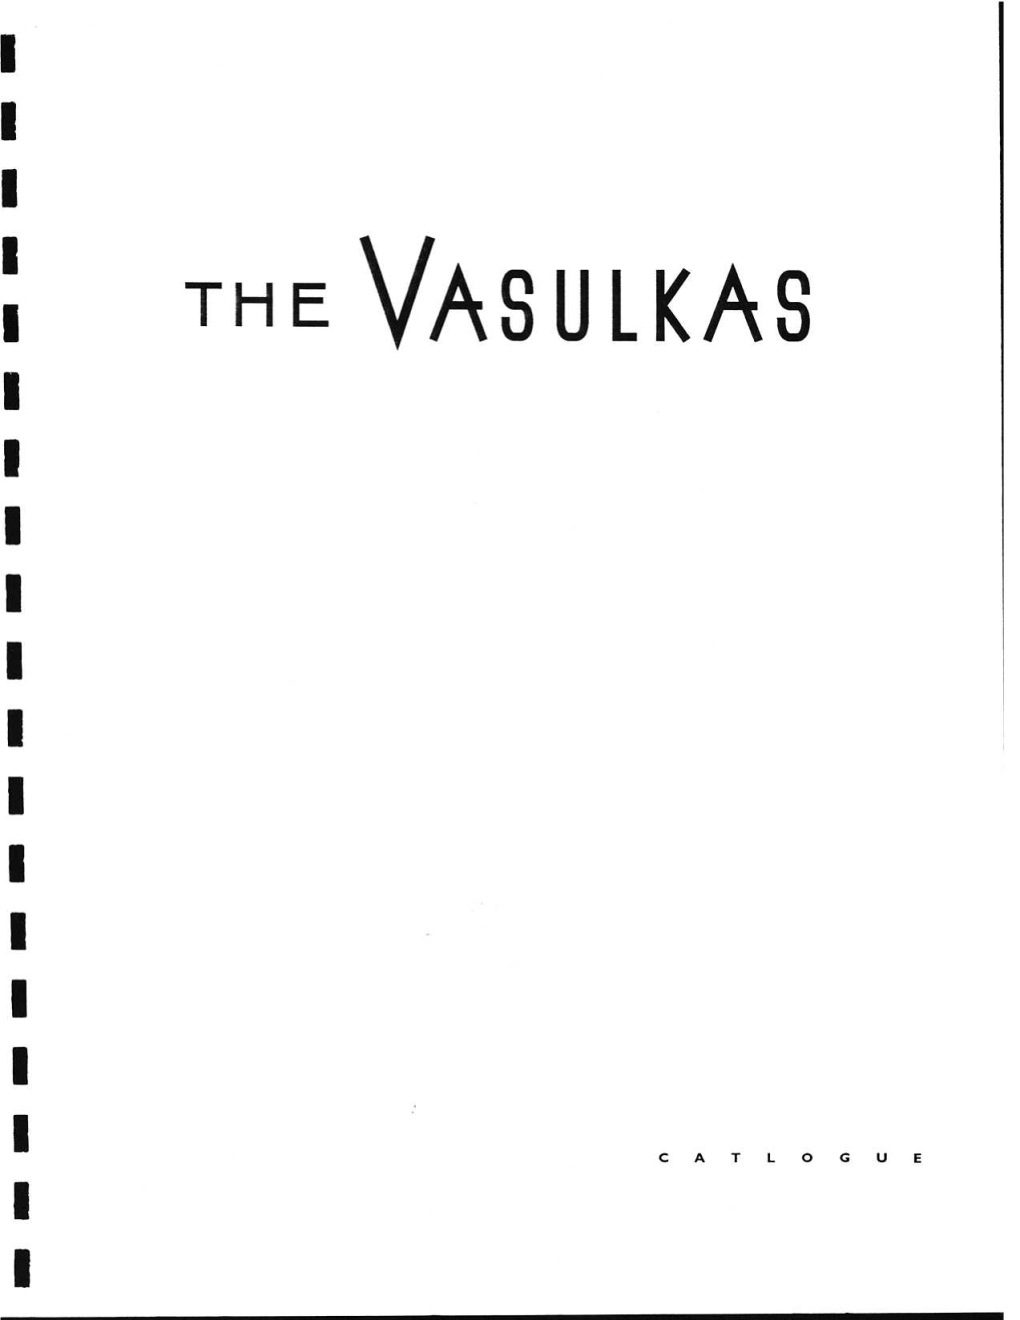 The Vasulkas